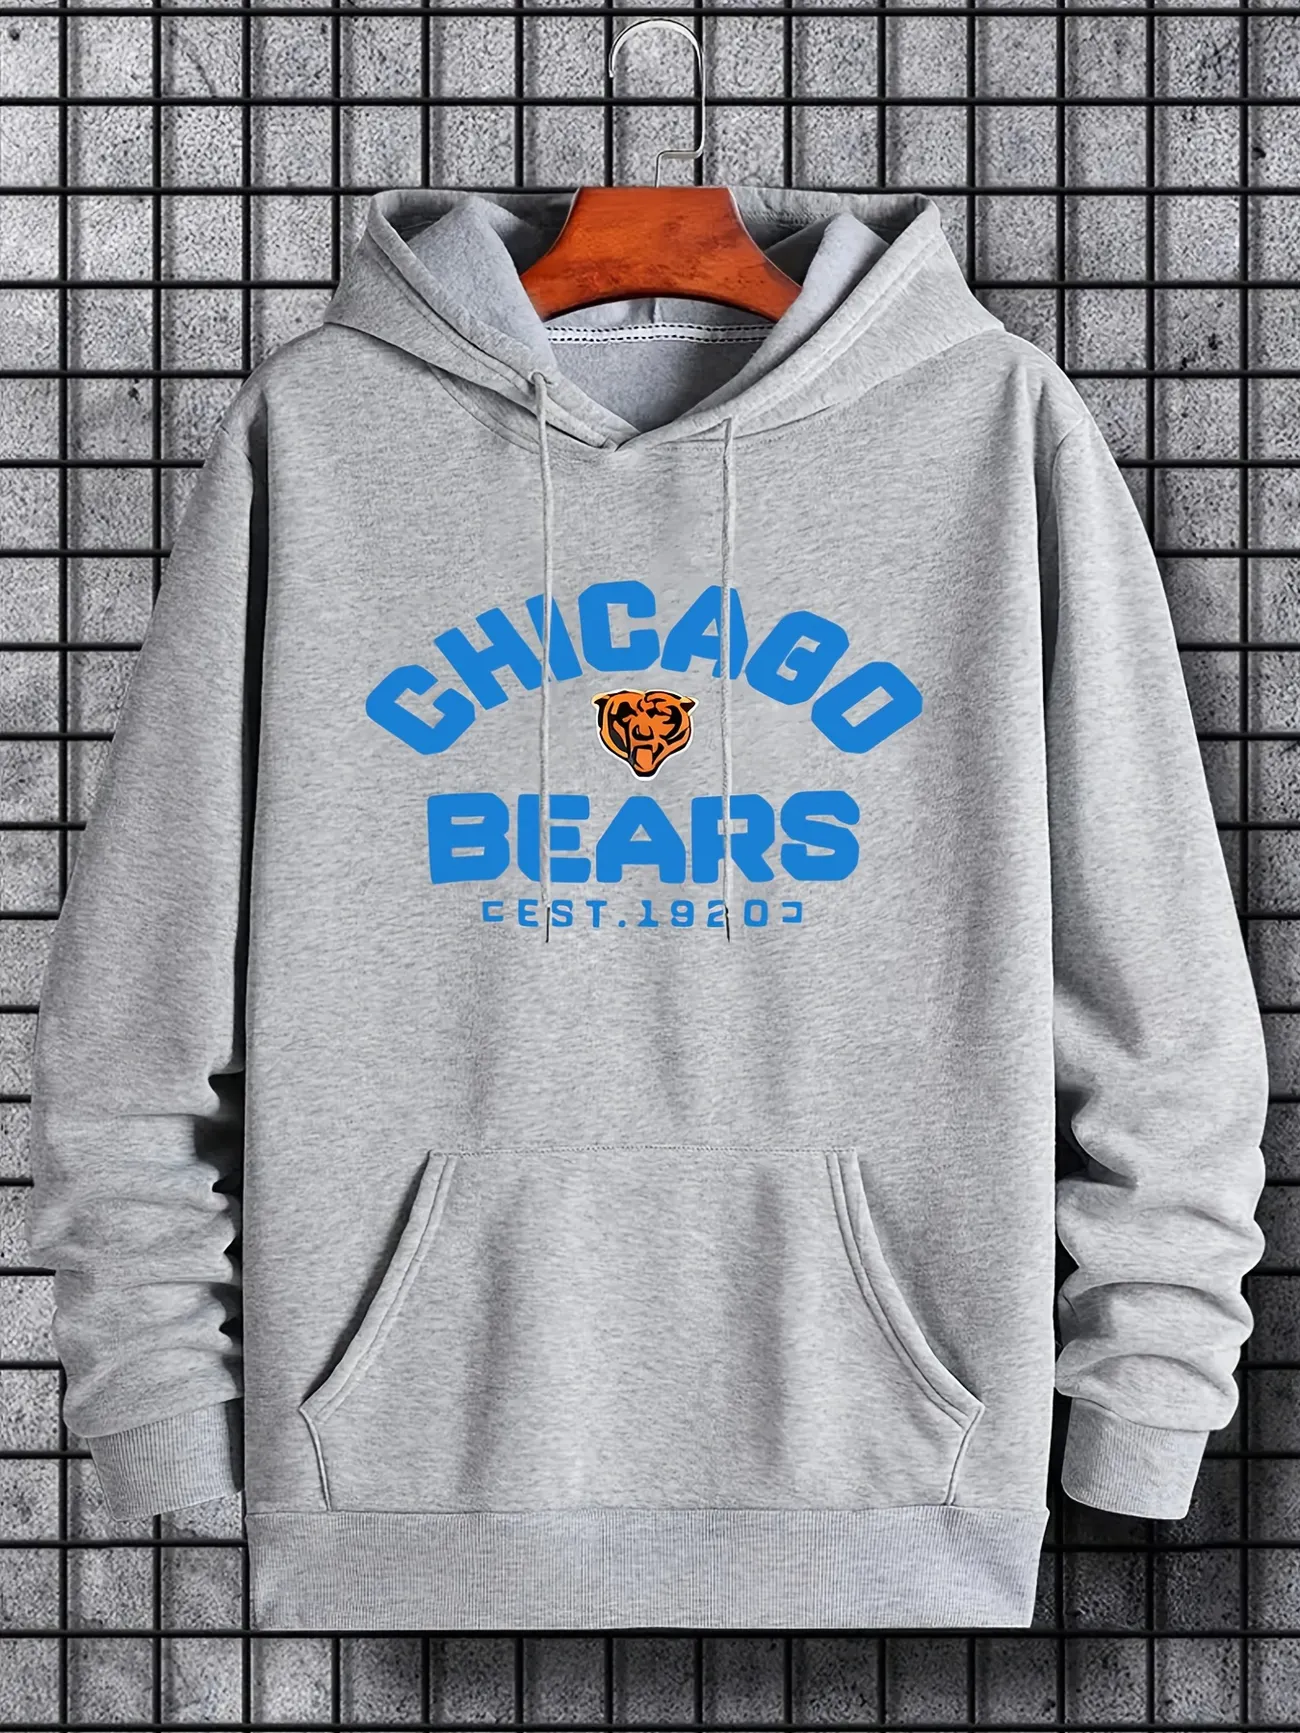 men chicago bears sweatshirt